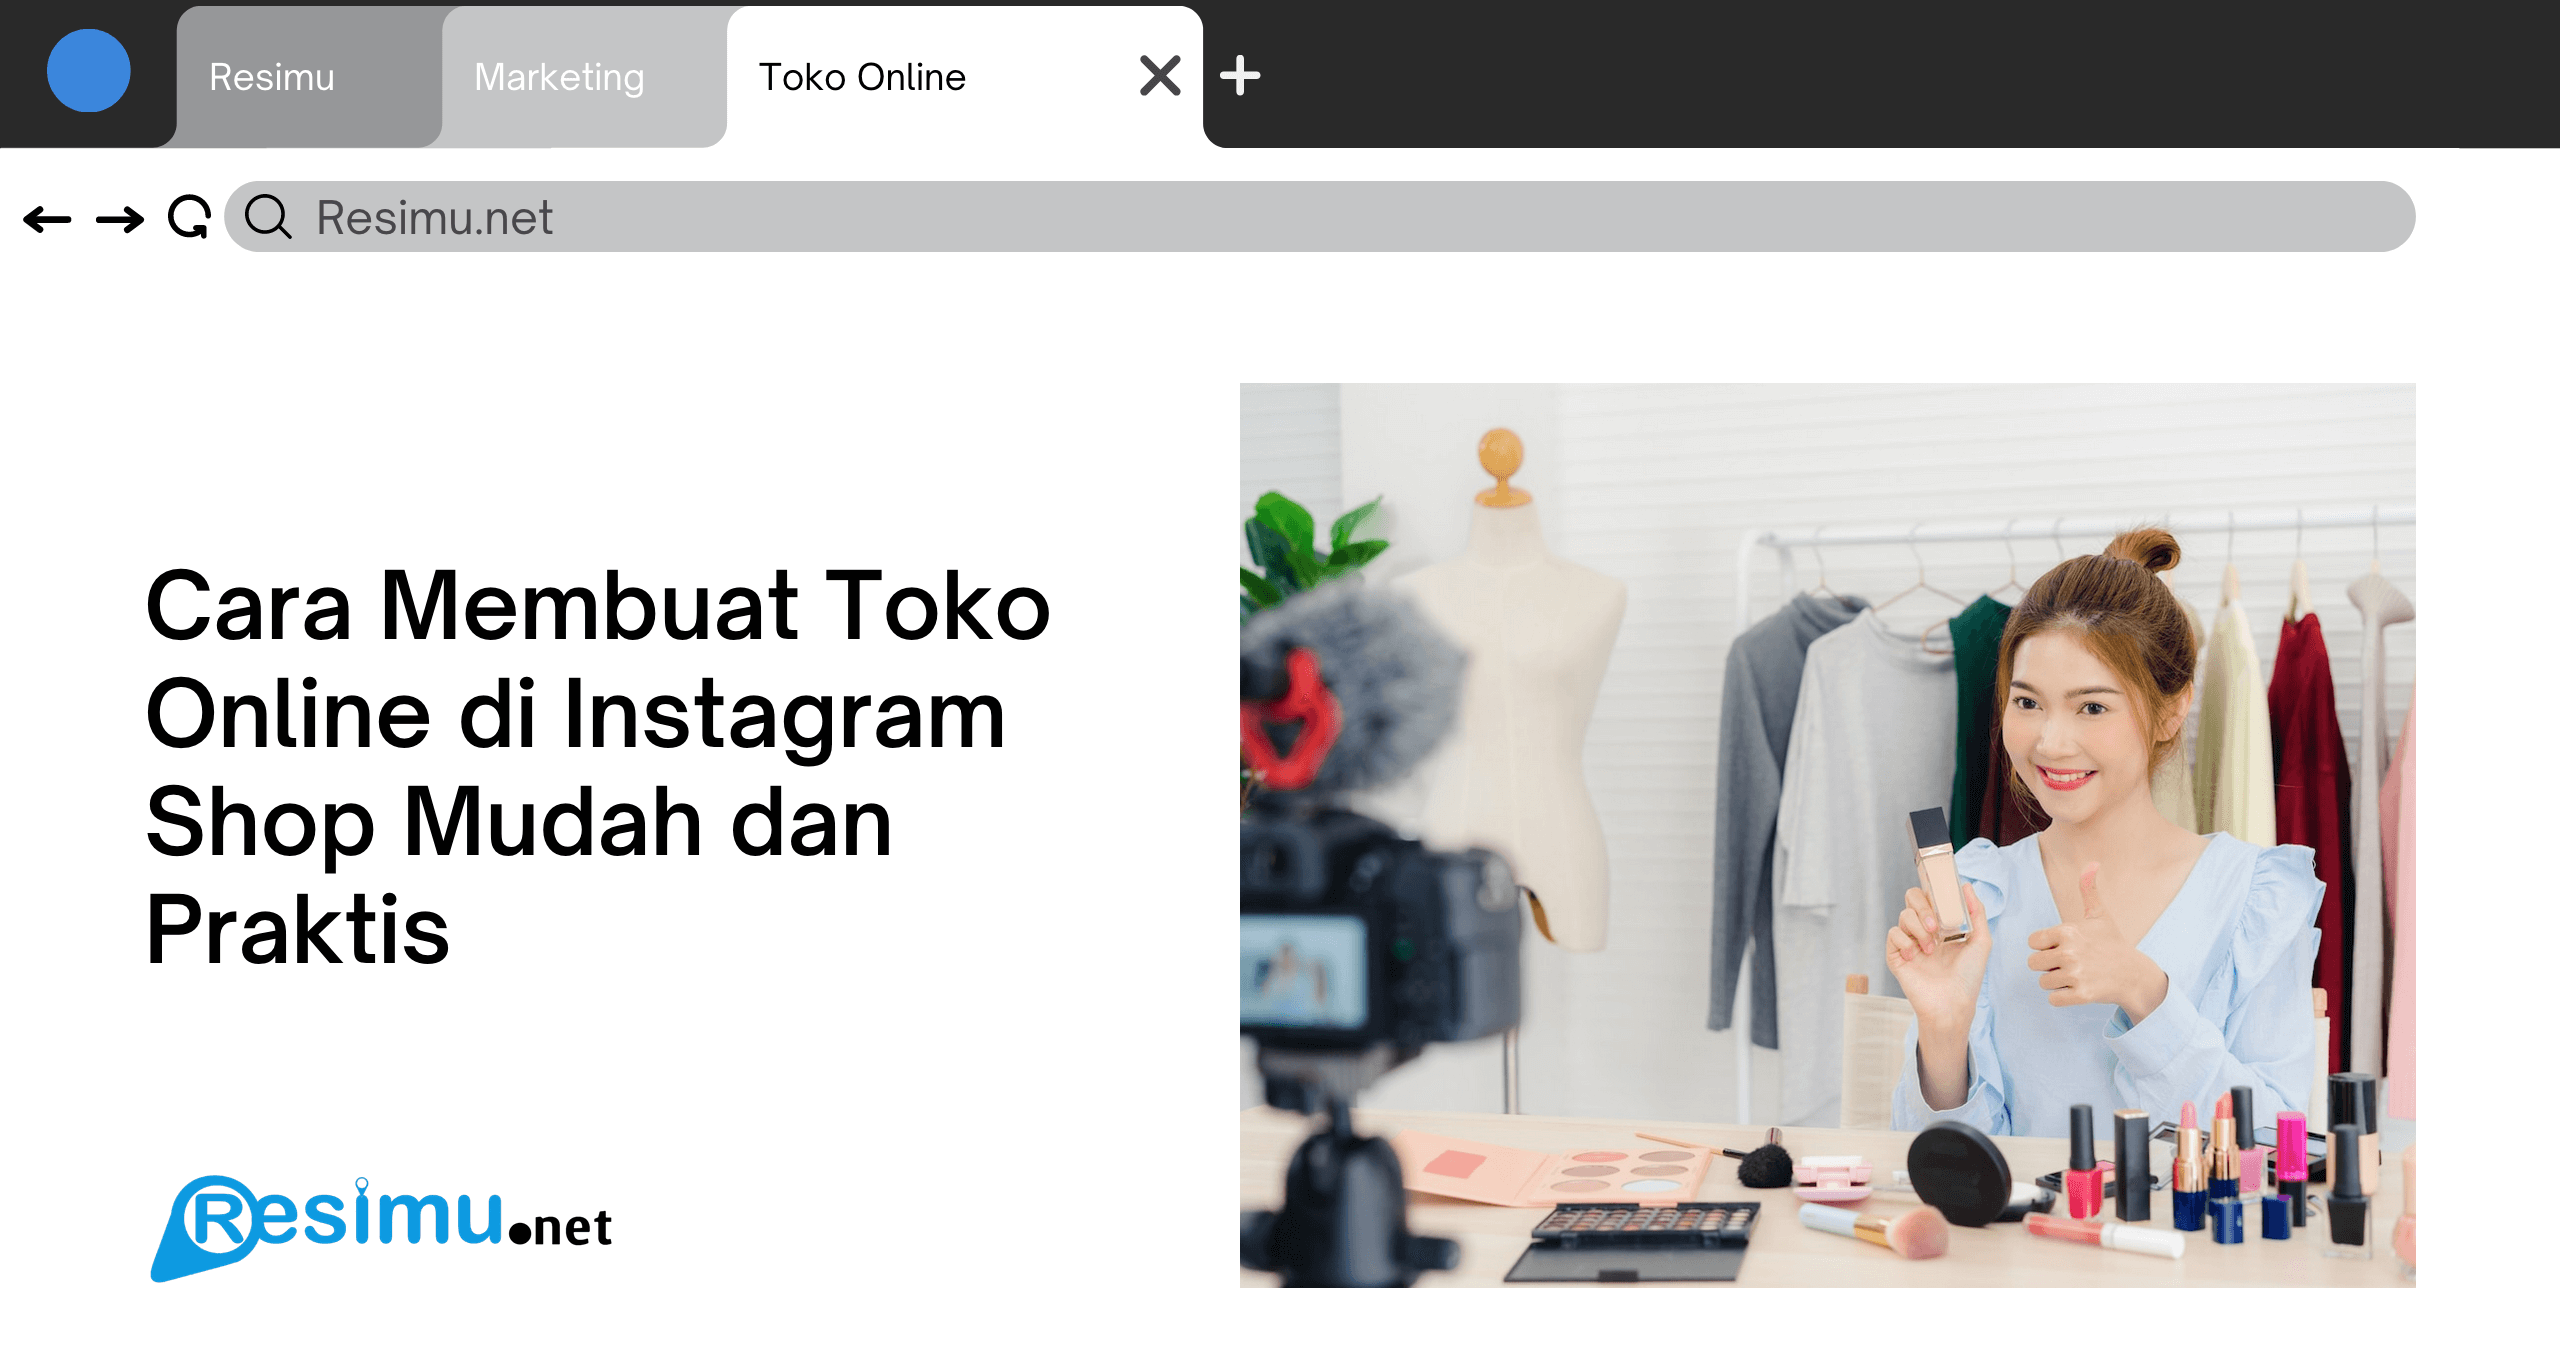 Cara Membuat Toko Online di Instagram Shop Mudah dan Praktis